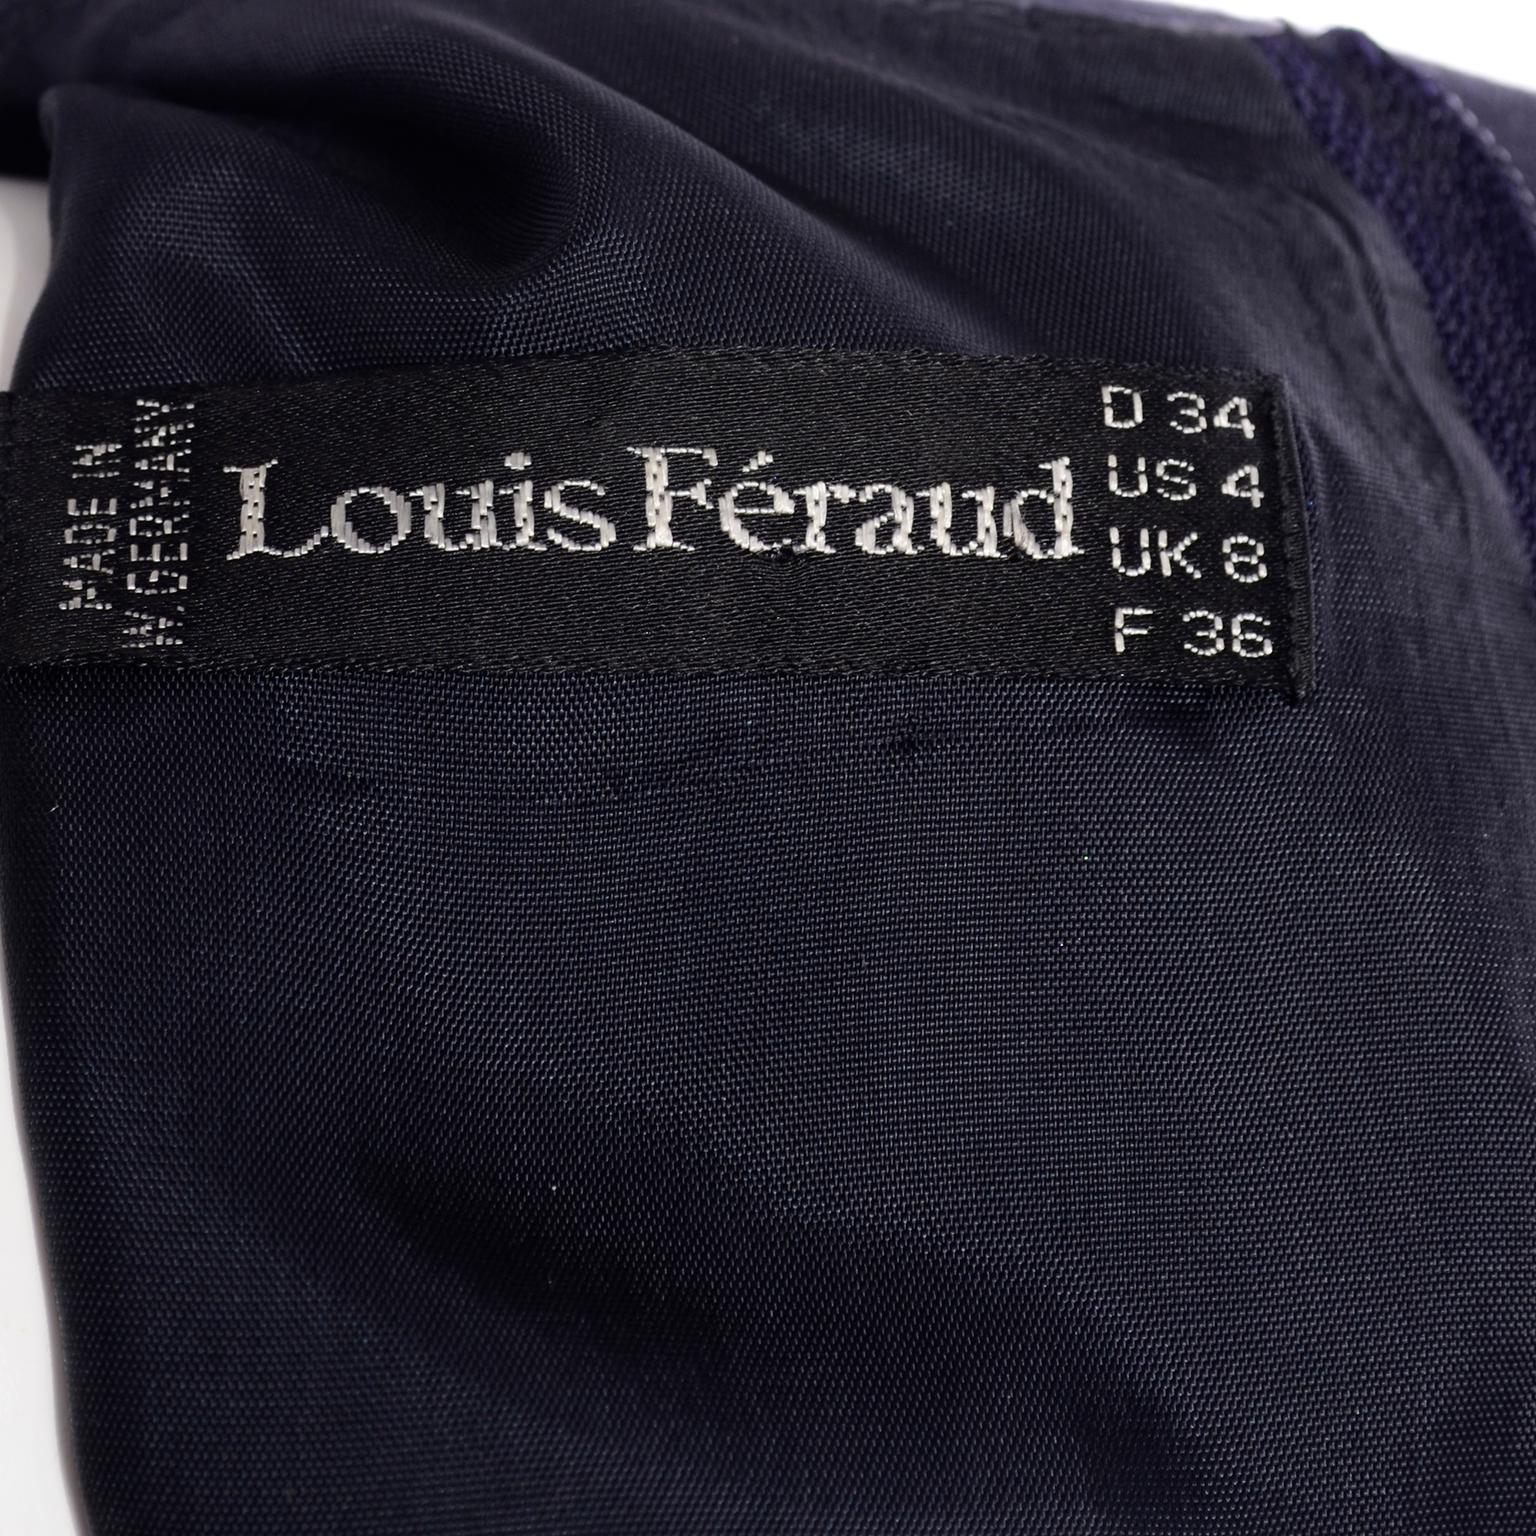 Louis Feraud Vintage Wollstrickkleid mit Kupferperlendetails 3